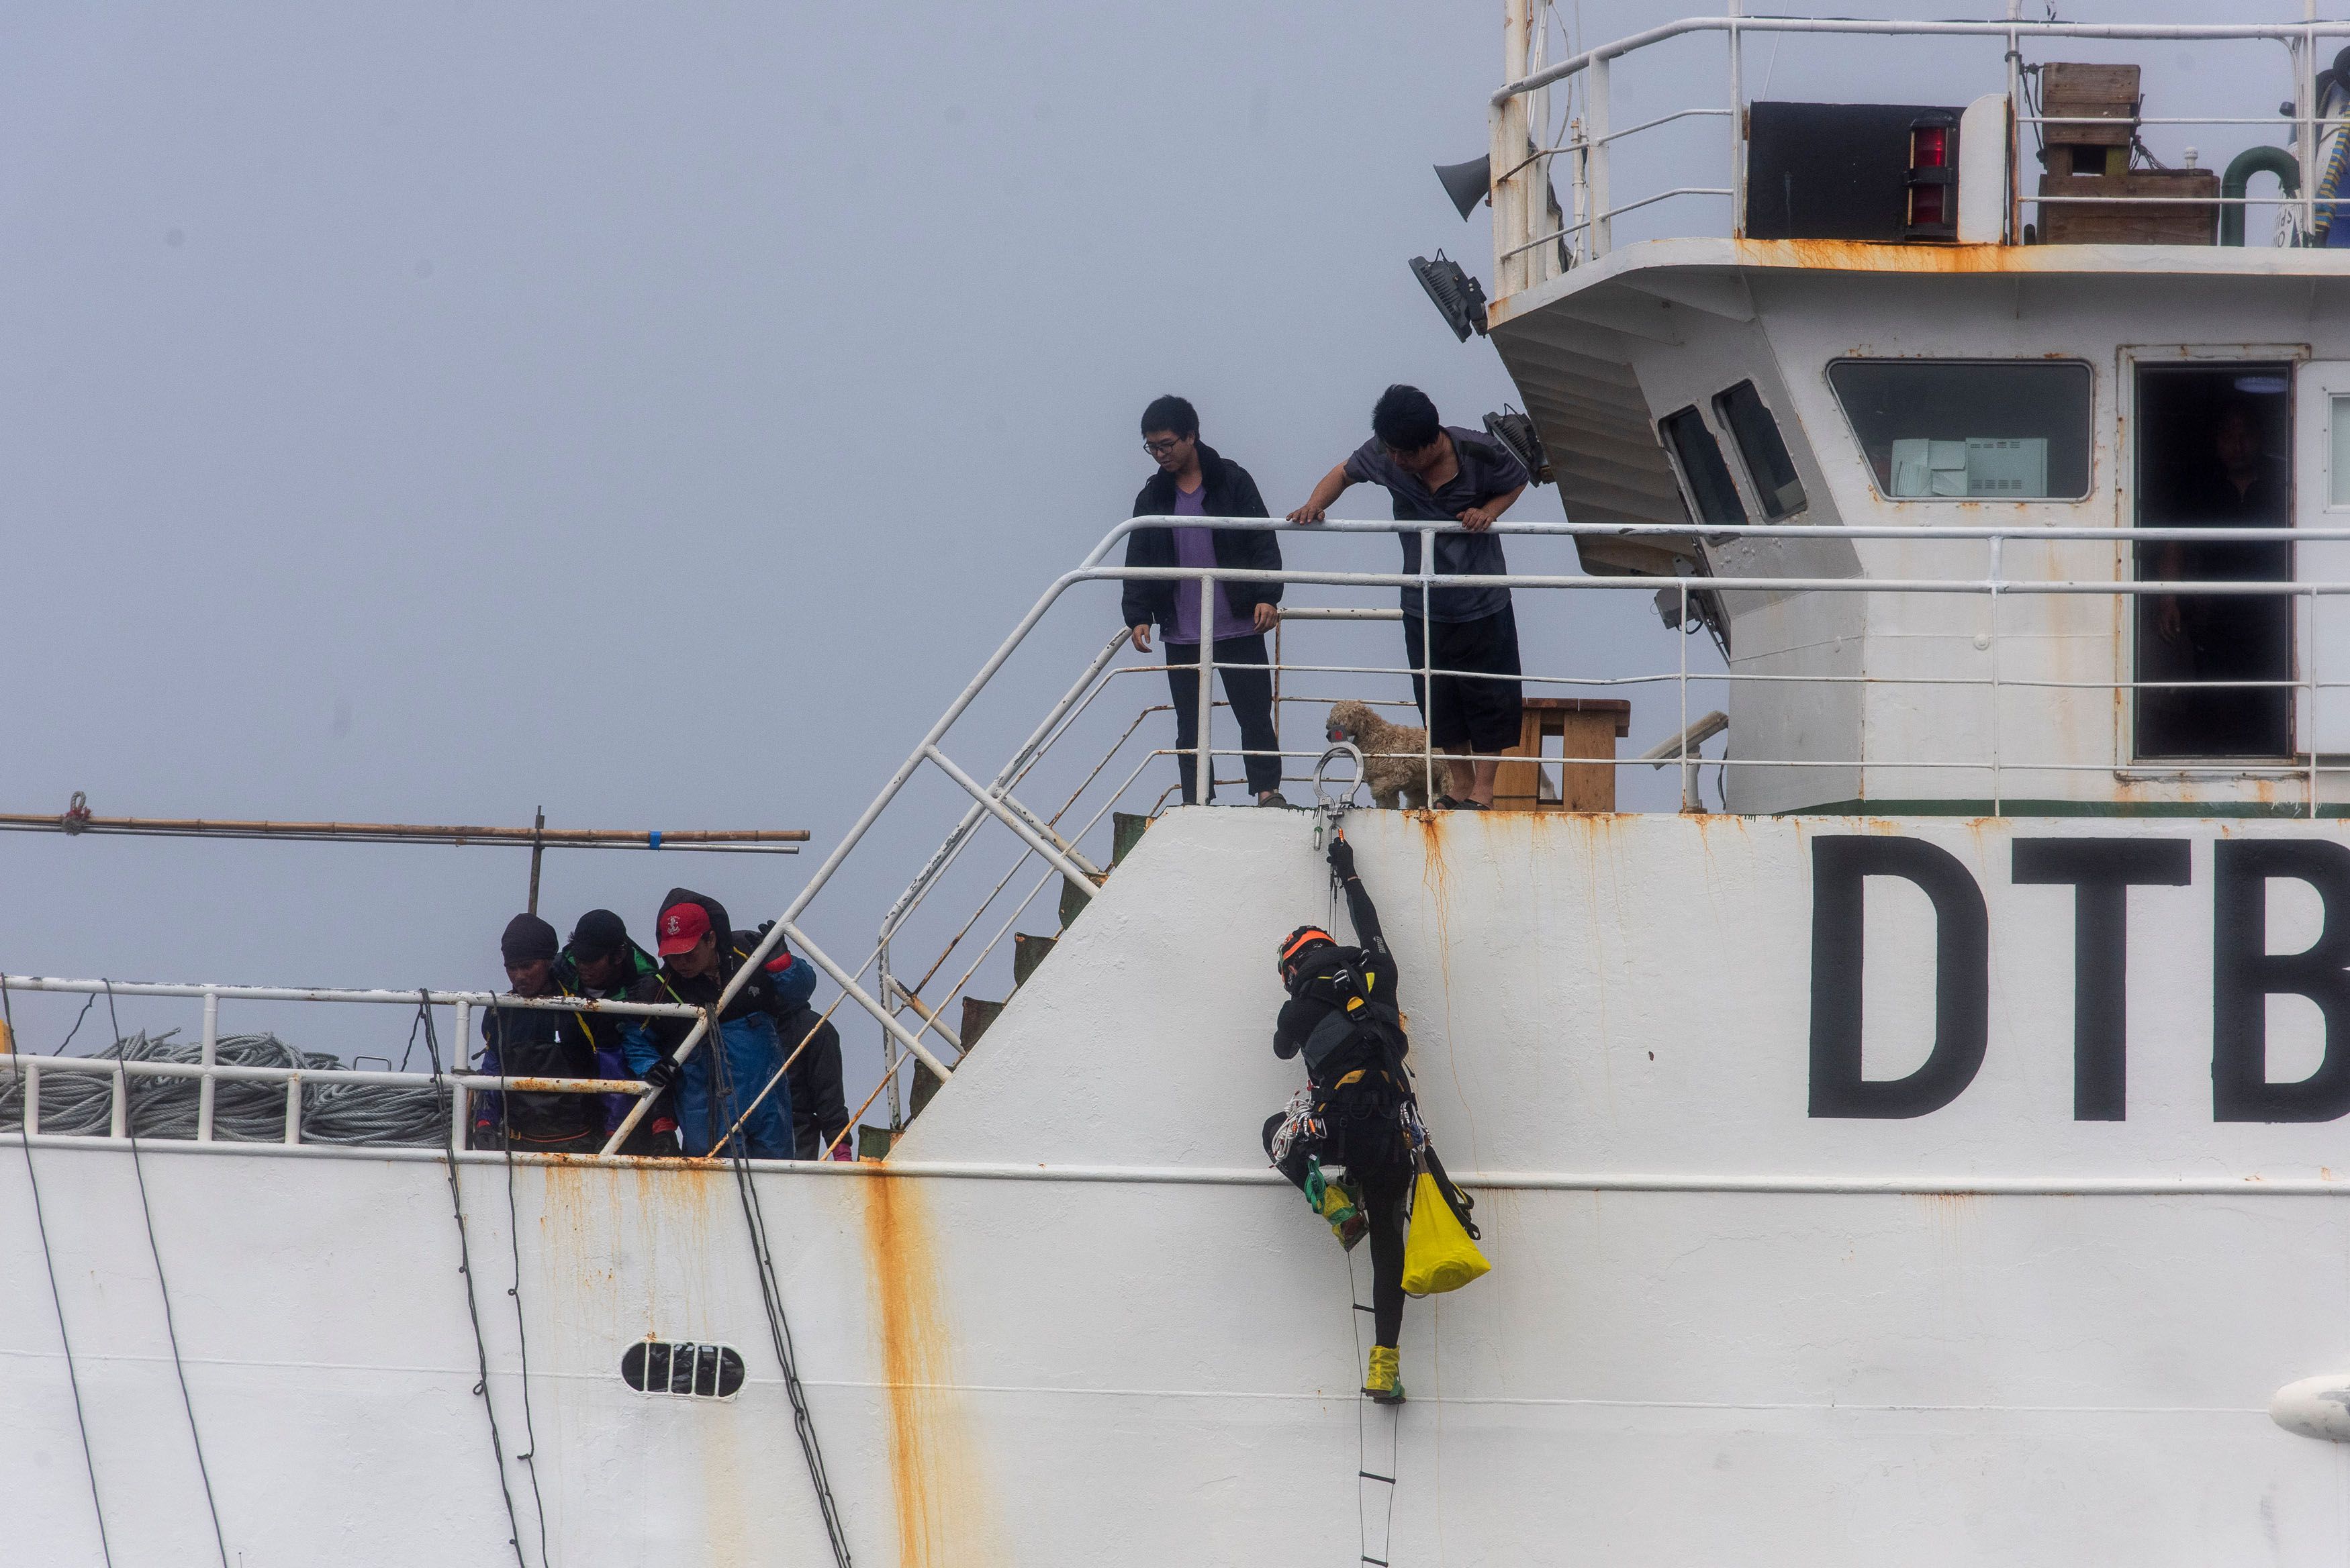 Bruno Castro fue el primero en saltar del gomón al Meridian. Los activistas engancharon una escalera y se aferraron al buque para expresar su mensaje. Foto: Cristobal Olivares / Greenpeace